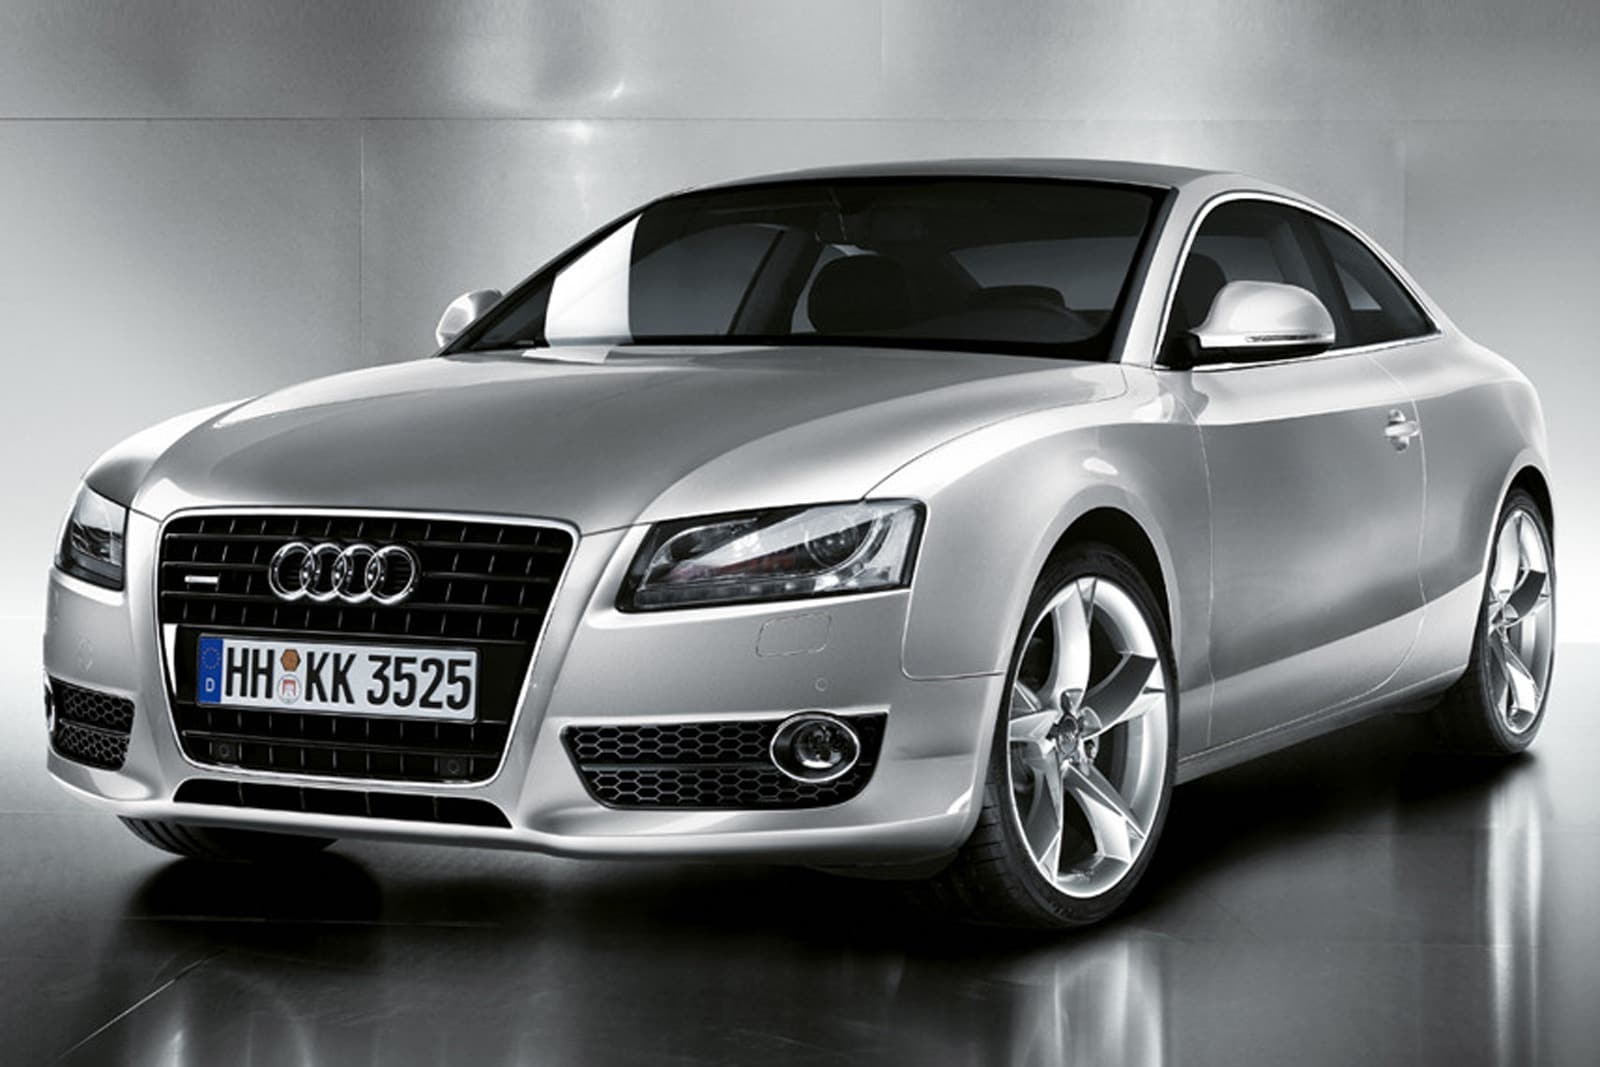 2008 Audi A5 Review & Ratings | Edmunds